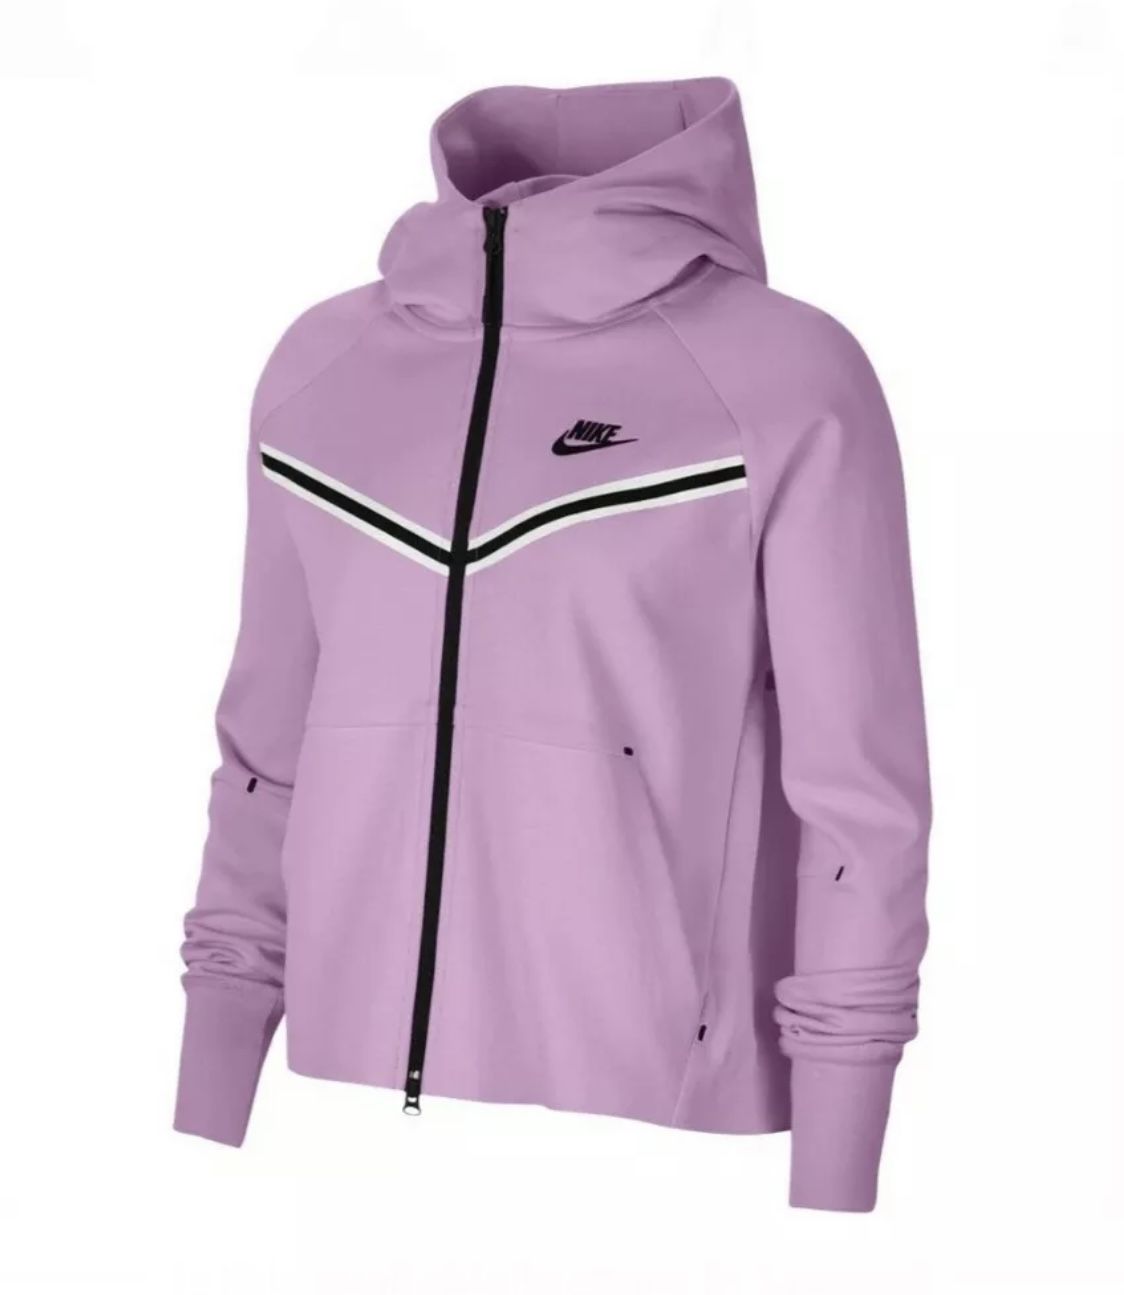 Nike Sportswear Full Zip Tech Fleece Pink Jacket CW4298-680 Women’s Size XS